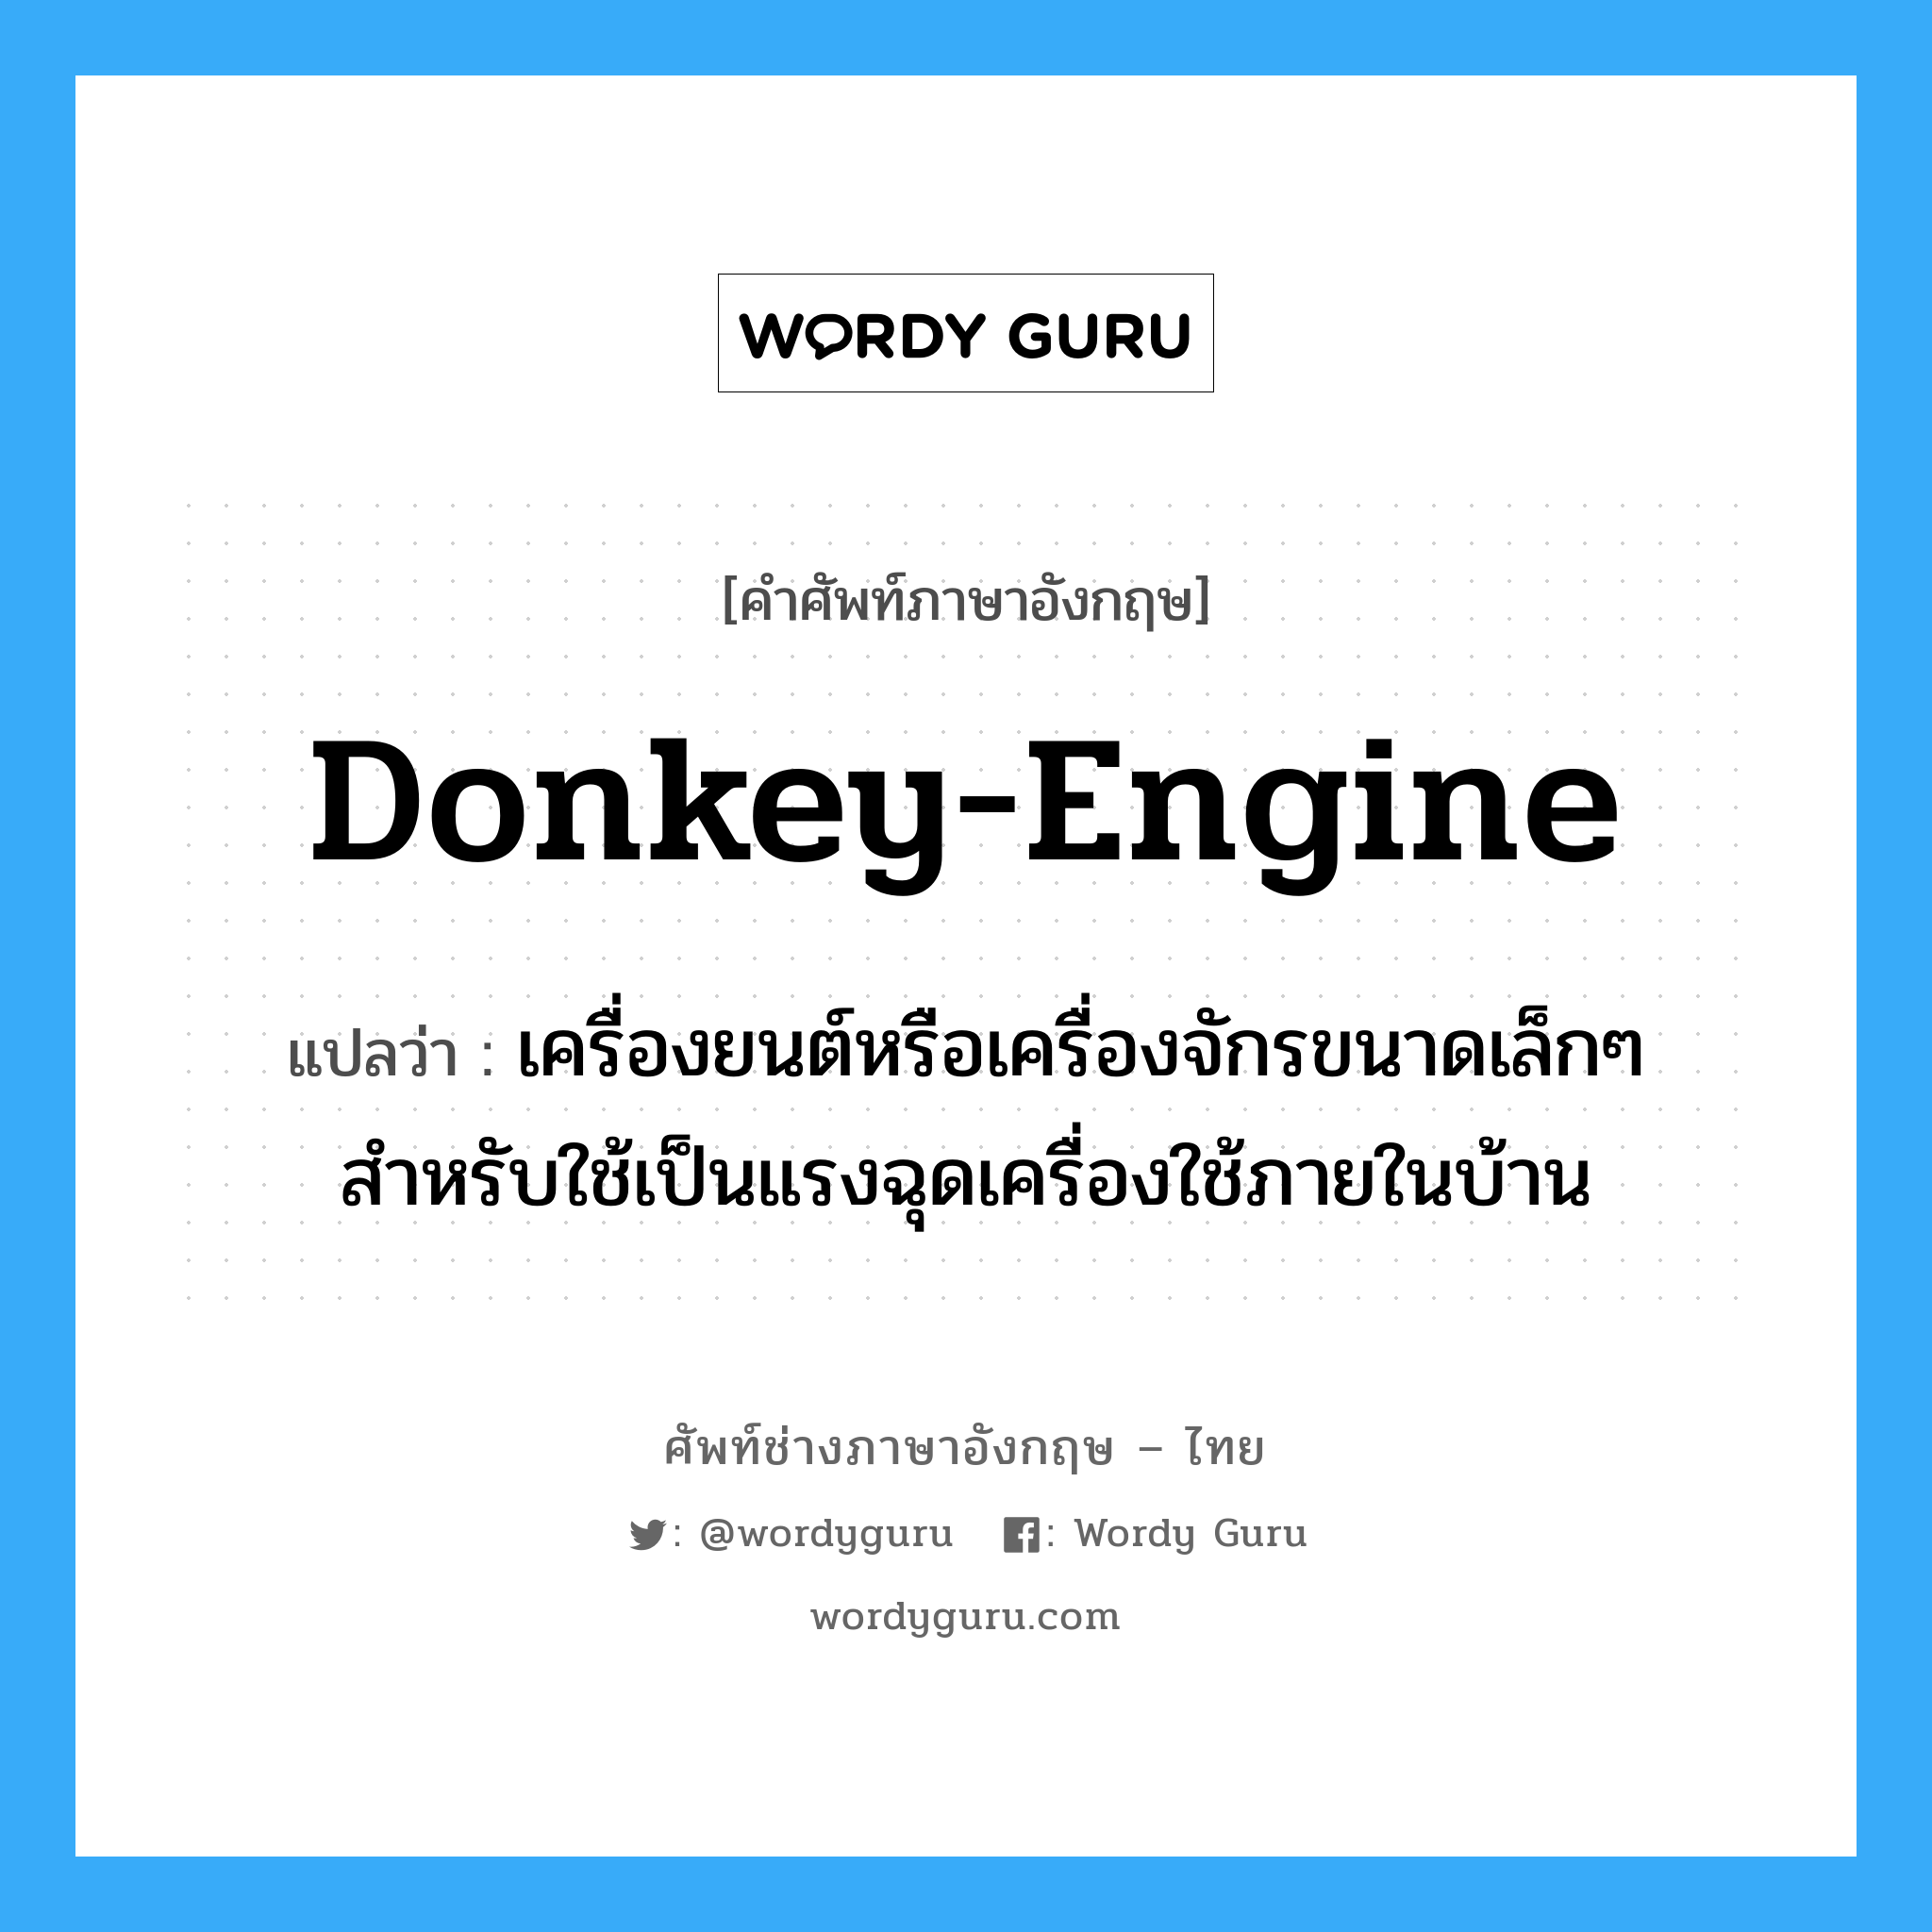 donkey-engine แปลว่า?, คำศัพท์ช่างภาษาอังกฤษ - ไทย donkey-engine คำศัพท์ภาษาอังกฤษ donkey-engine แปลว่า เครื่องยนต์หรือเครื่องจักรขนาดเล็กๆ สำหรับใช้เป็นแรงฉุดเครื่องใช้ภายในบ้าน